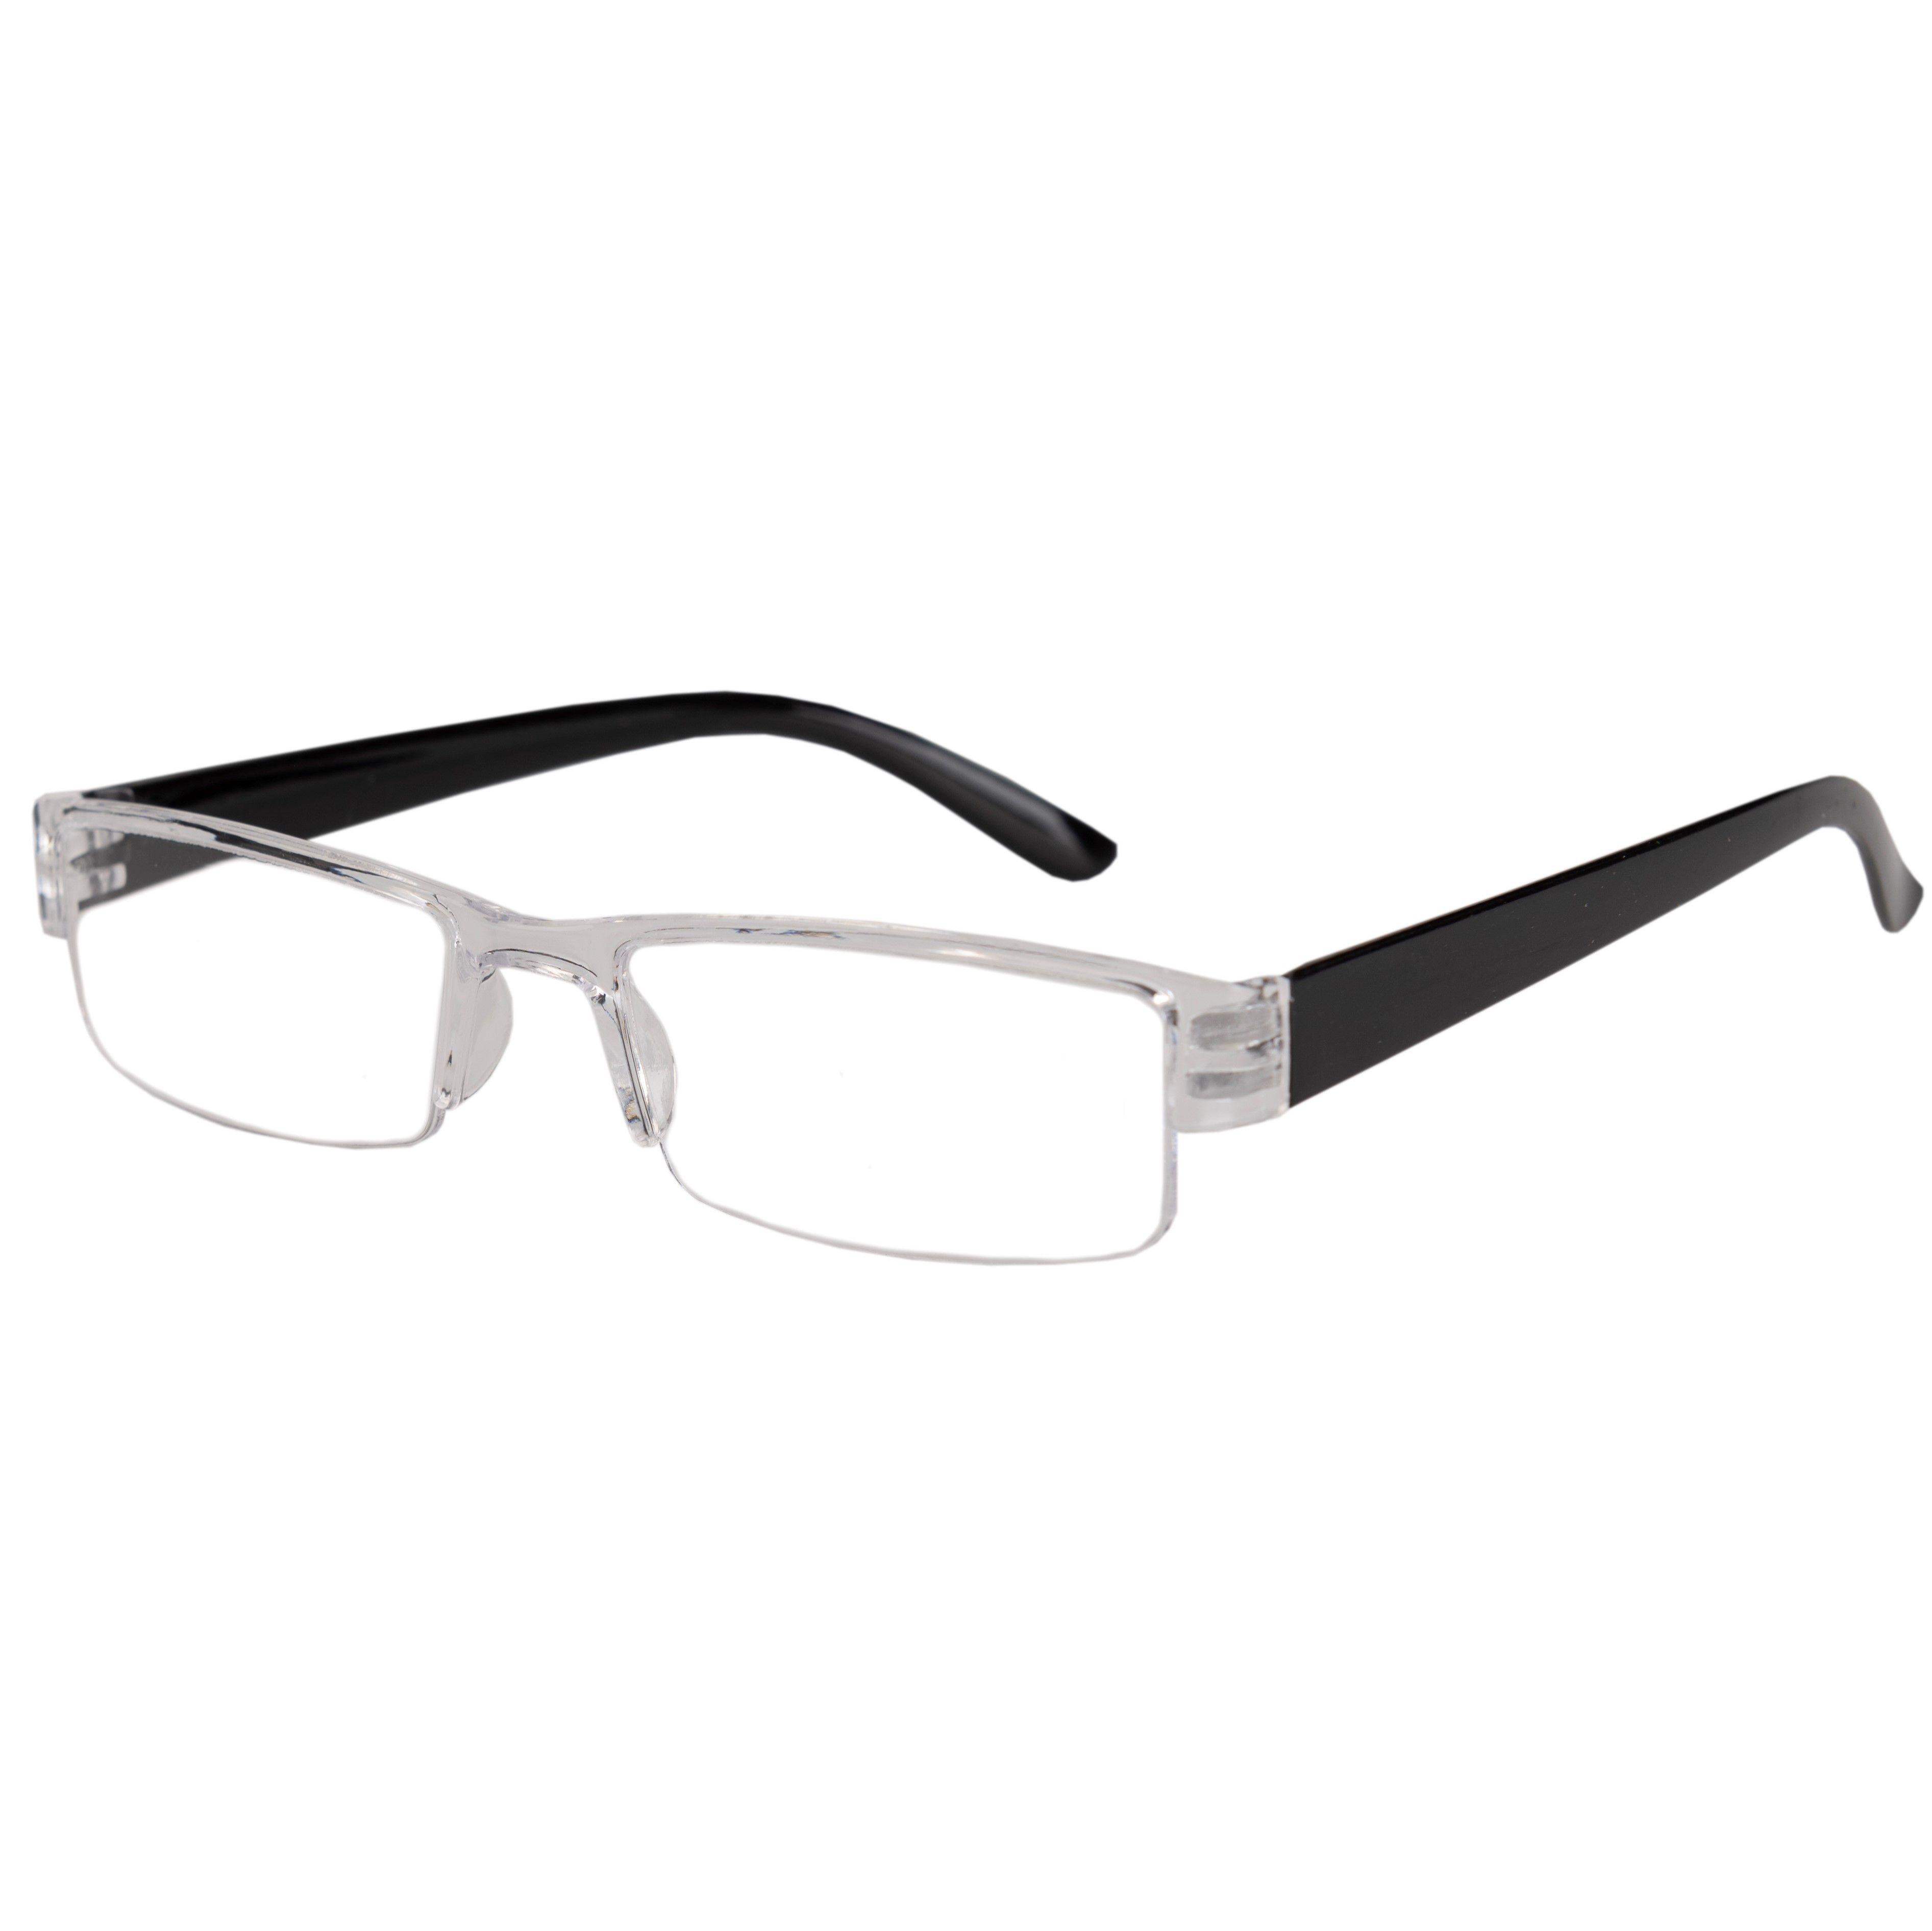 Готовые очки для зрения с диоптриями +2.0 корригирующие очки мужские / женские / очки на флекс системе